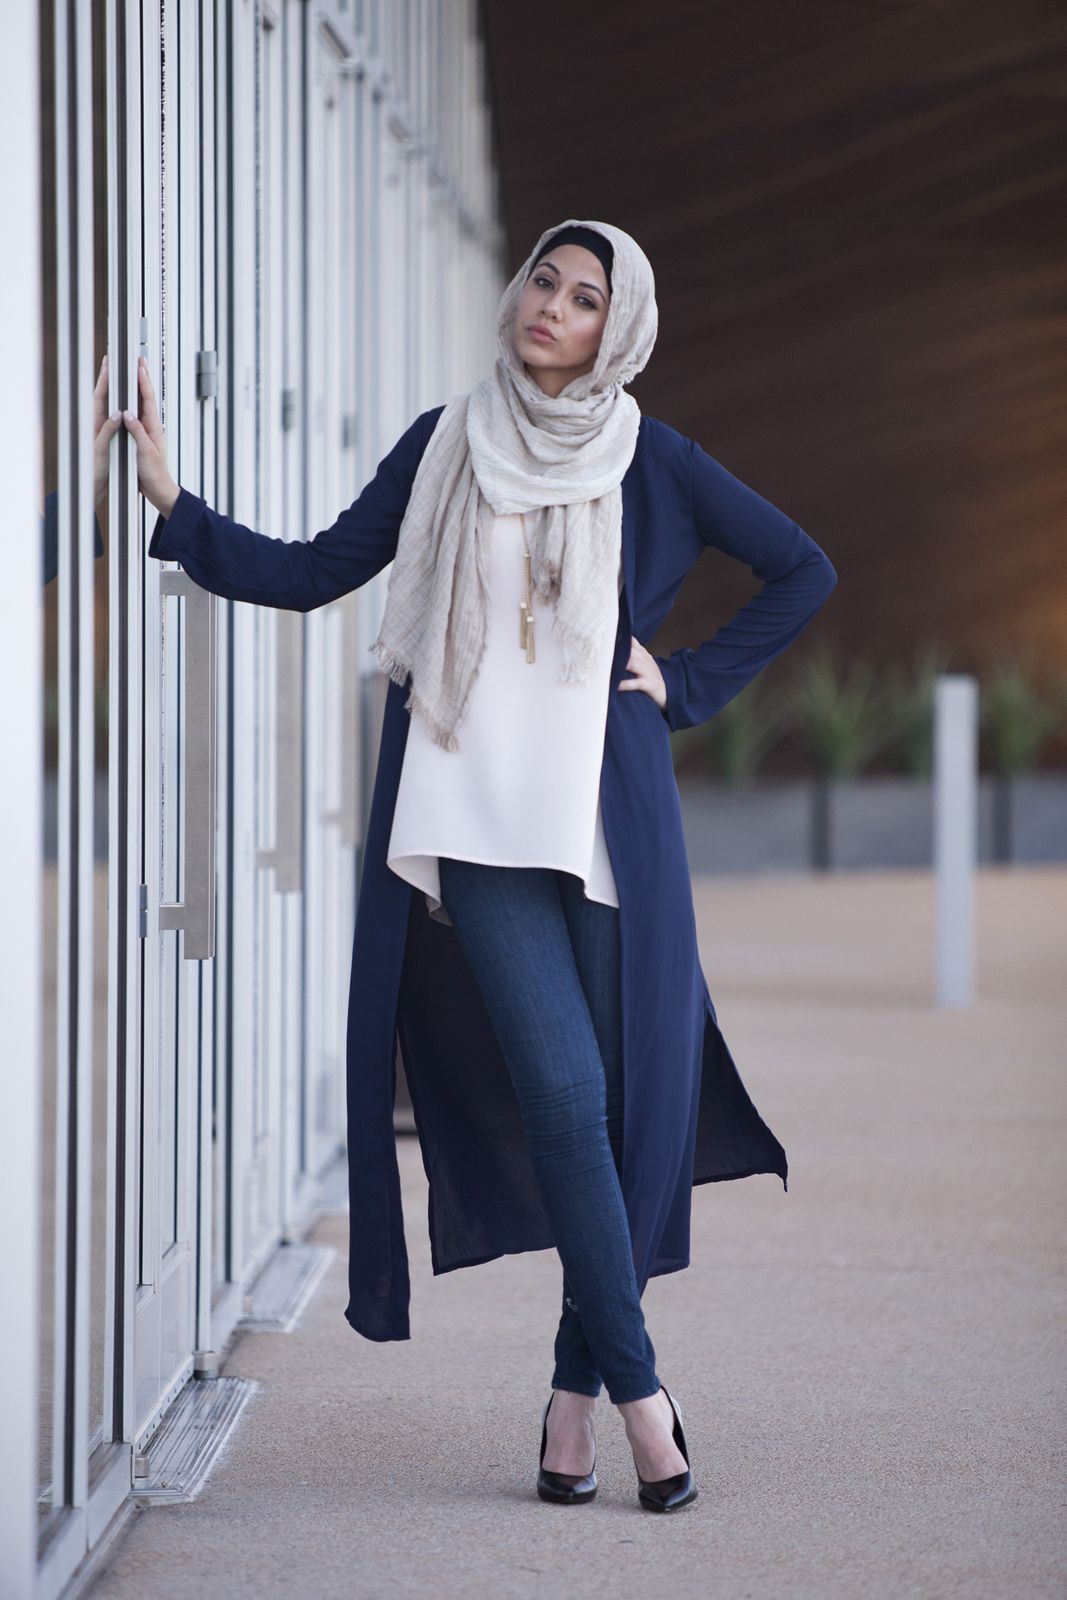 4 Outer yang Akan Membuat Gayamu dengan Hijab Semakin Stylish